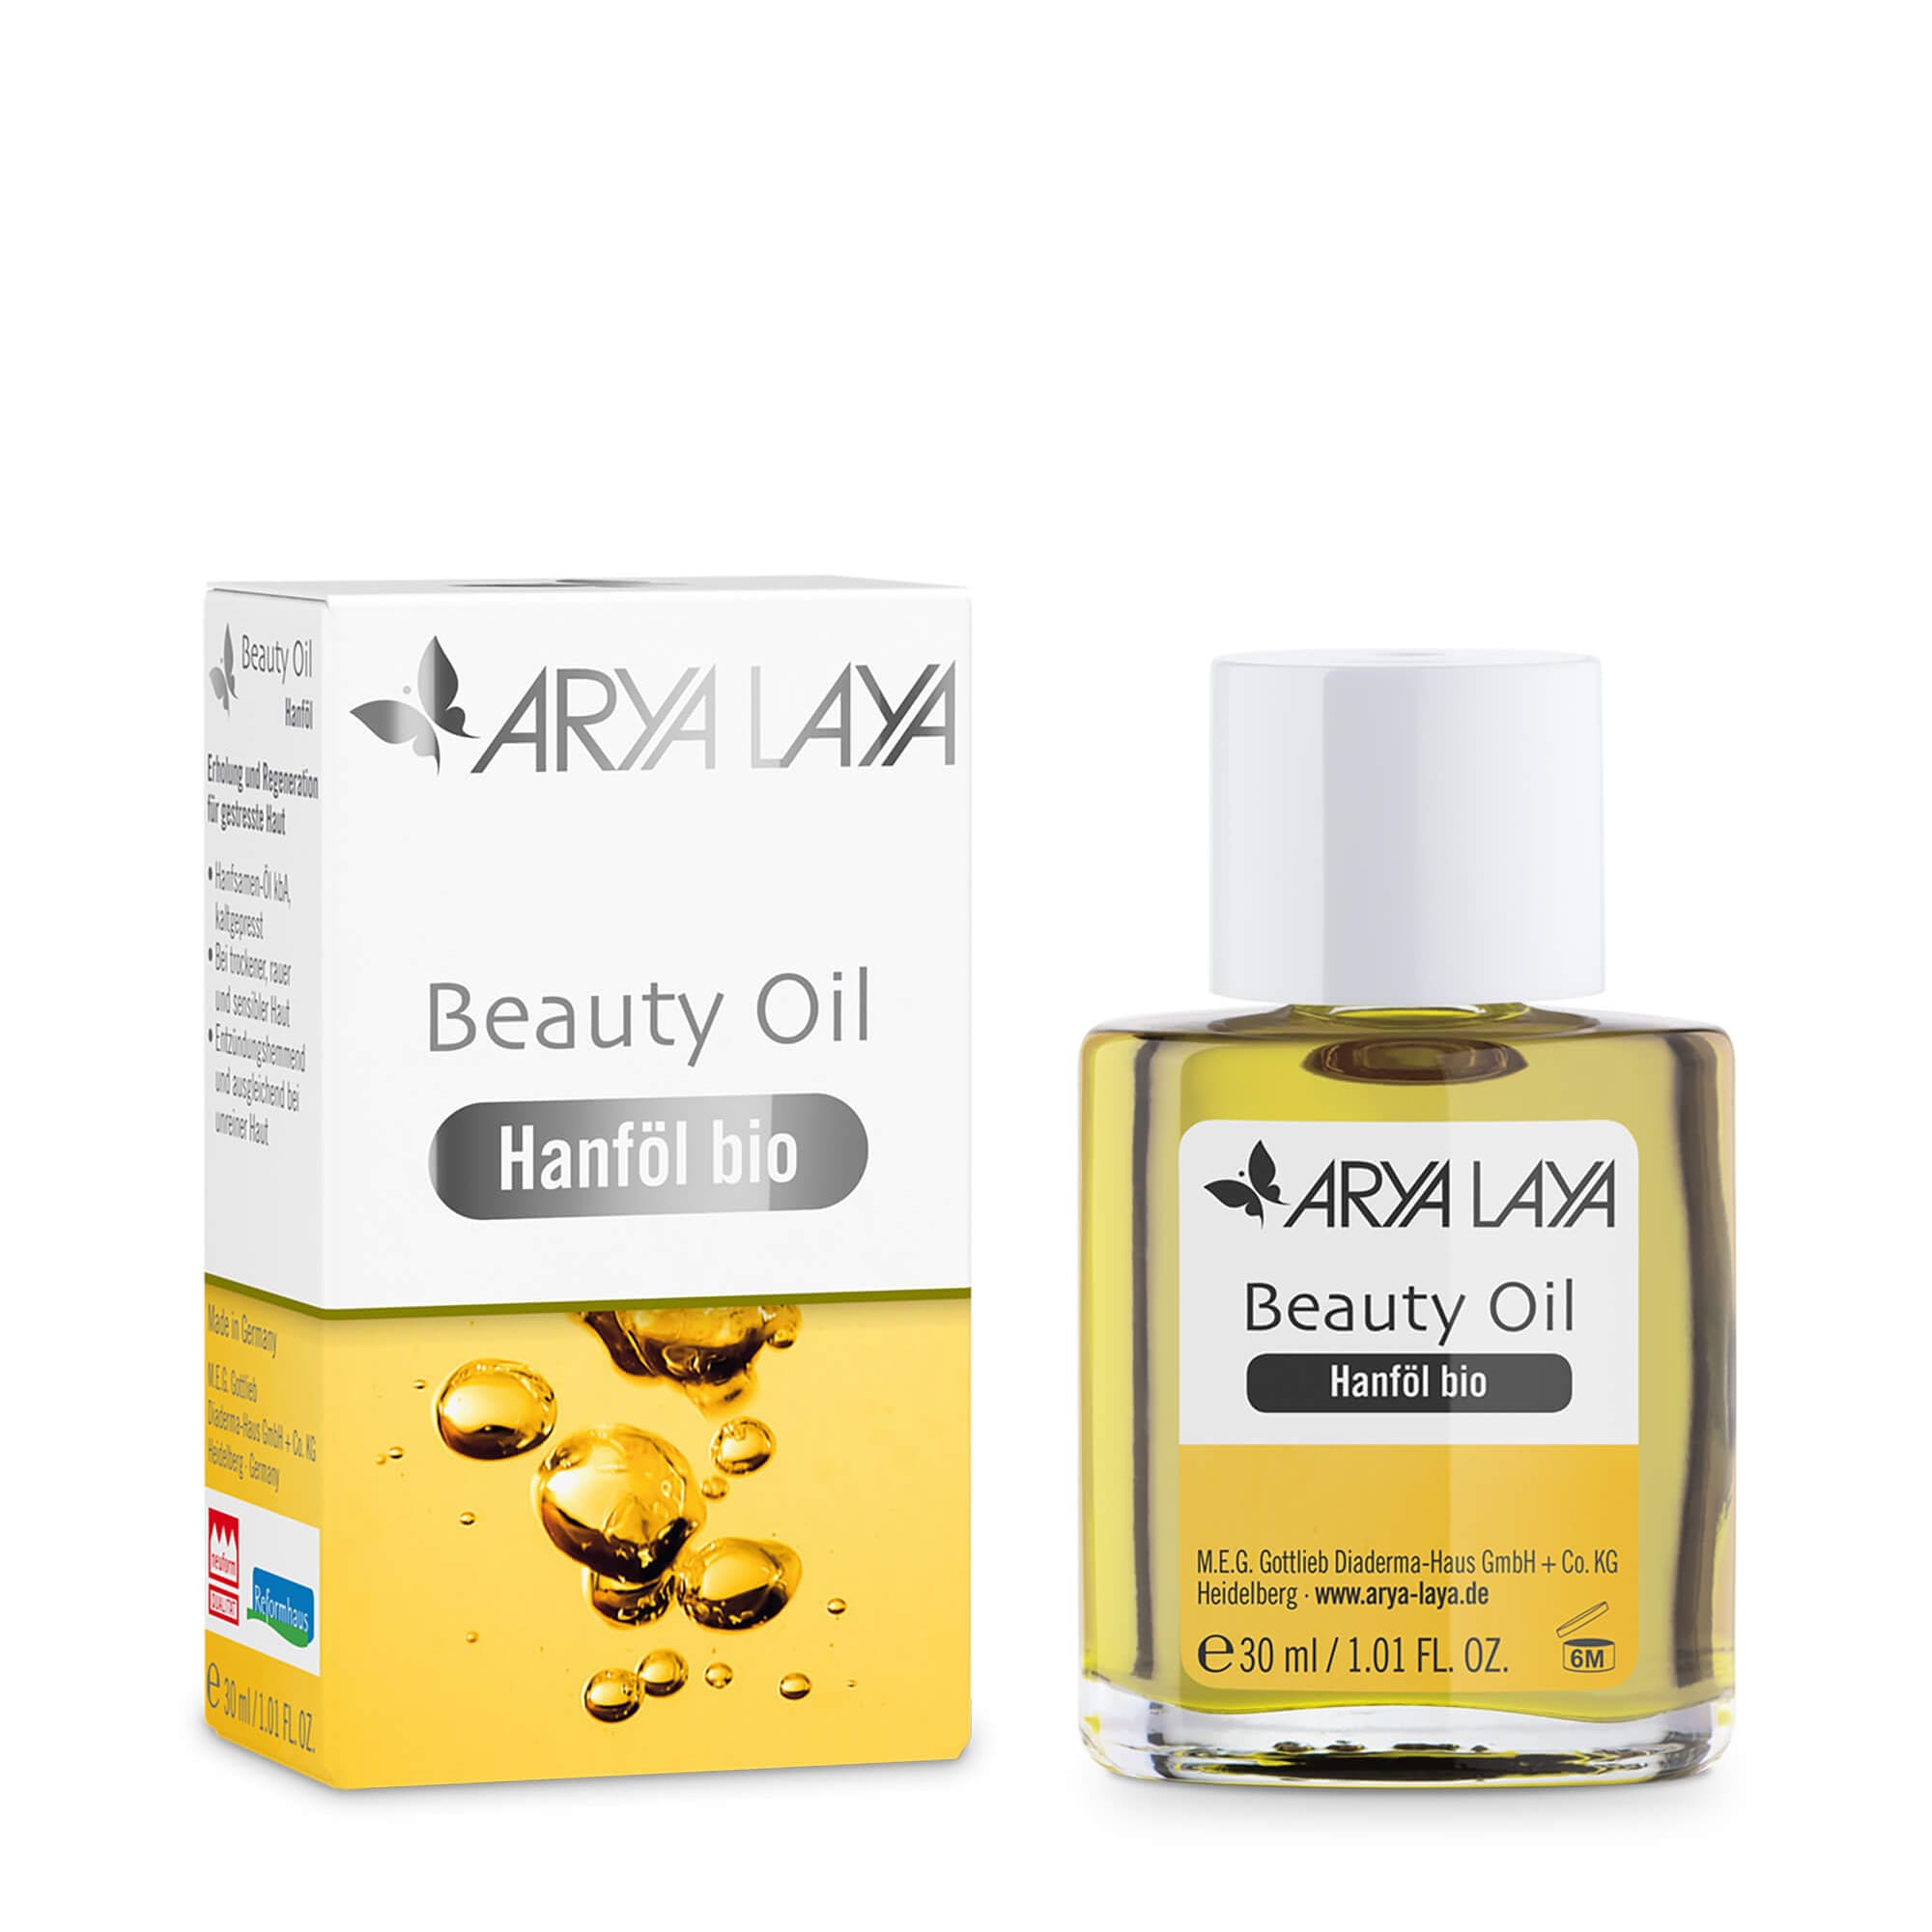 Glasfläschchen und Faltschachtel mit ARYA LAYA Beauty Oil Hanföl bio, 30 ml 